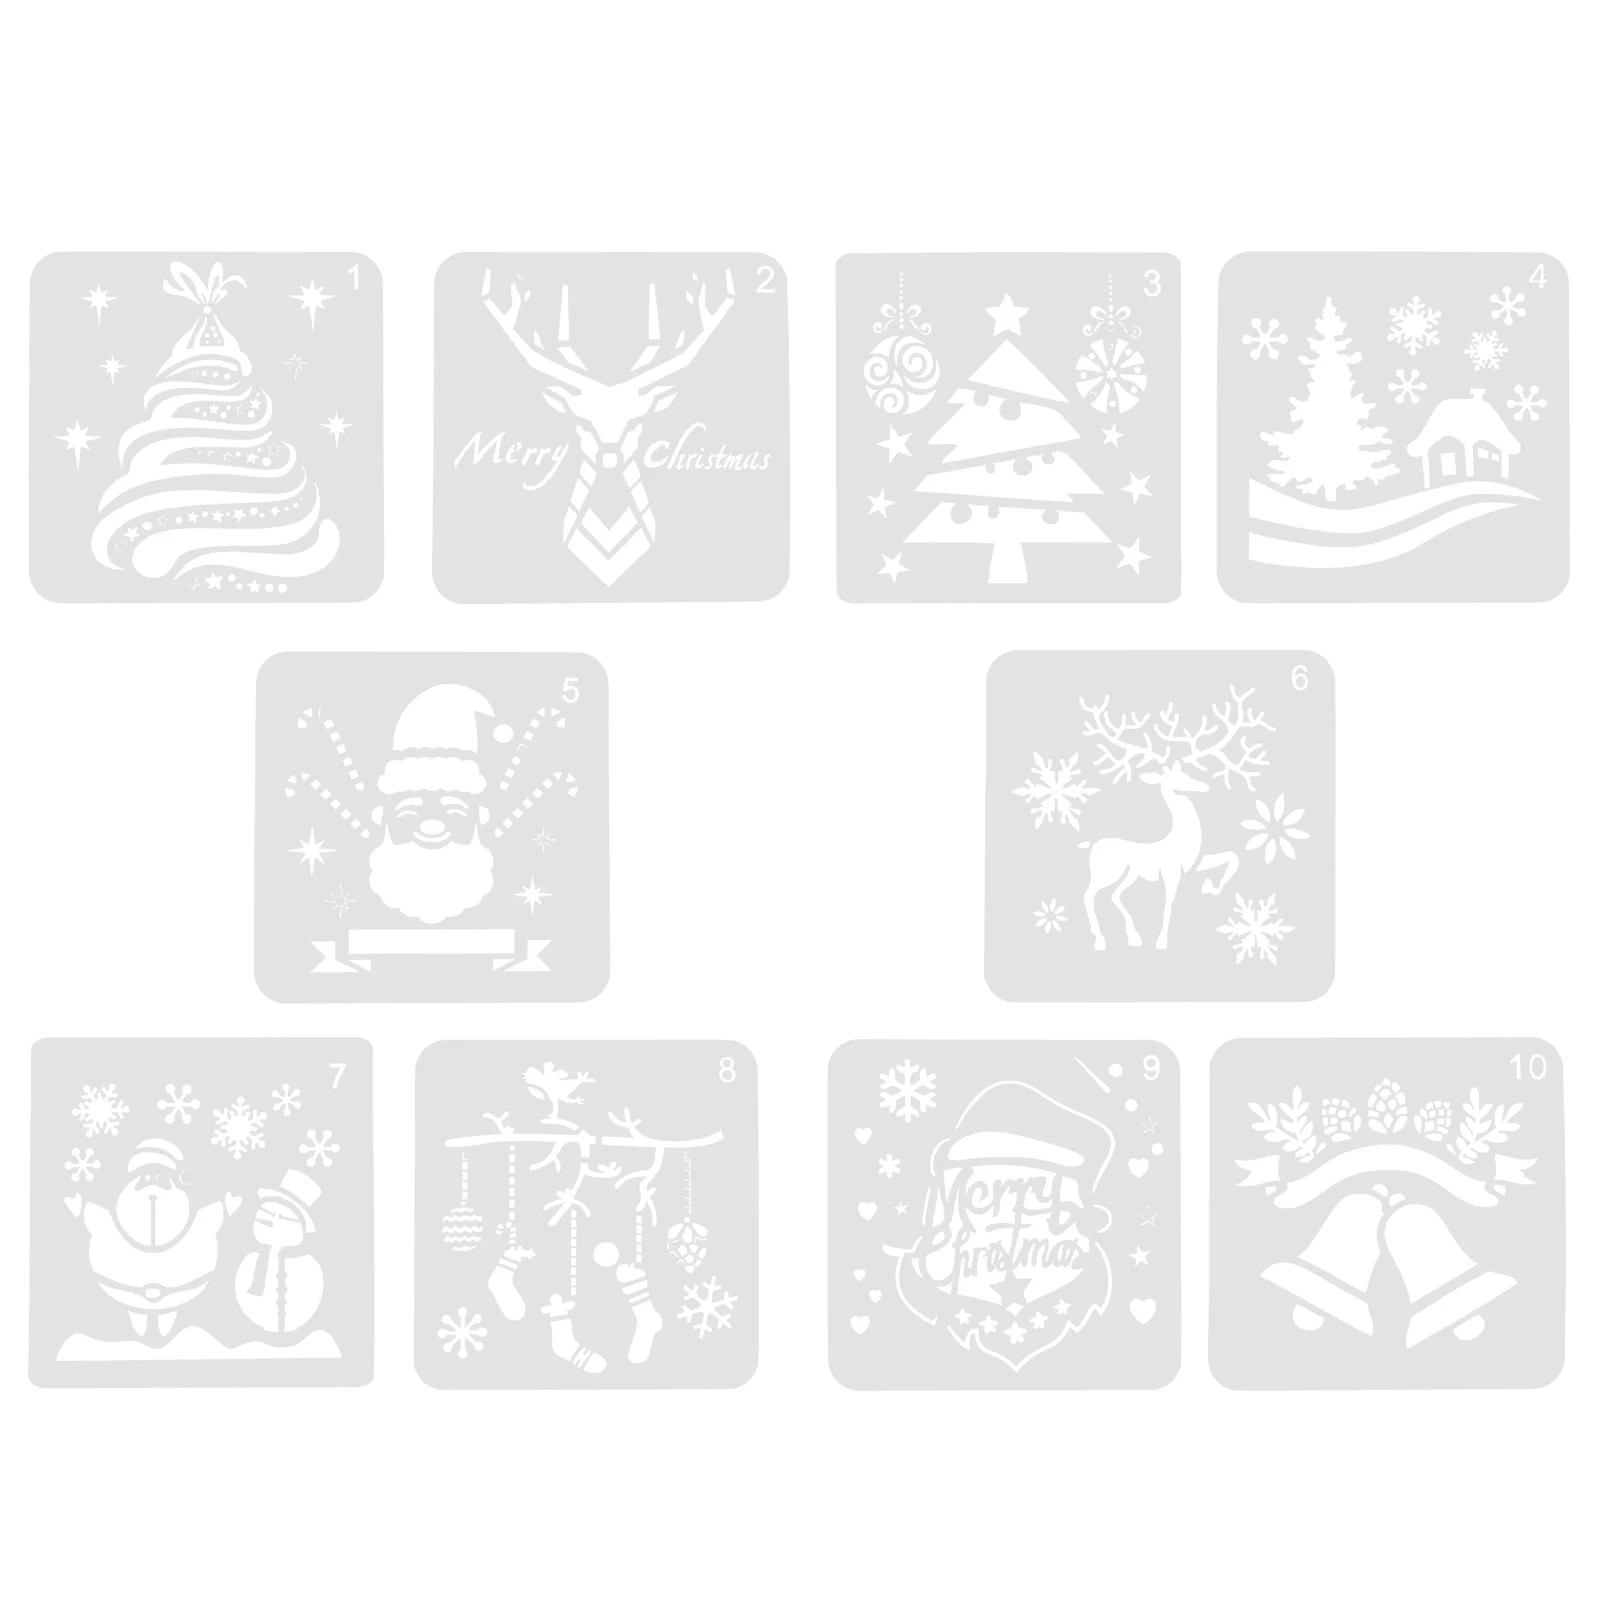 10шт рождественских шаблонов для рисования квадратной формы, принадлежности для рисования на Рождество (смешанный стиль)